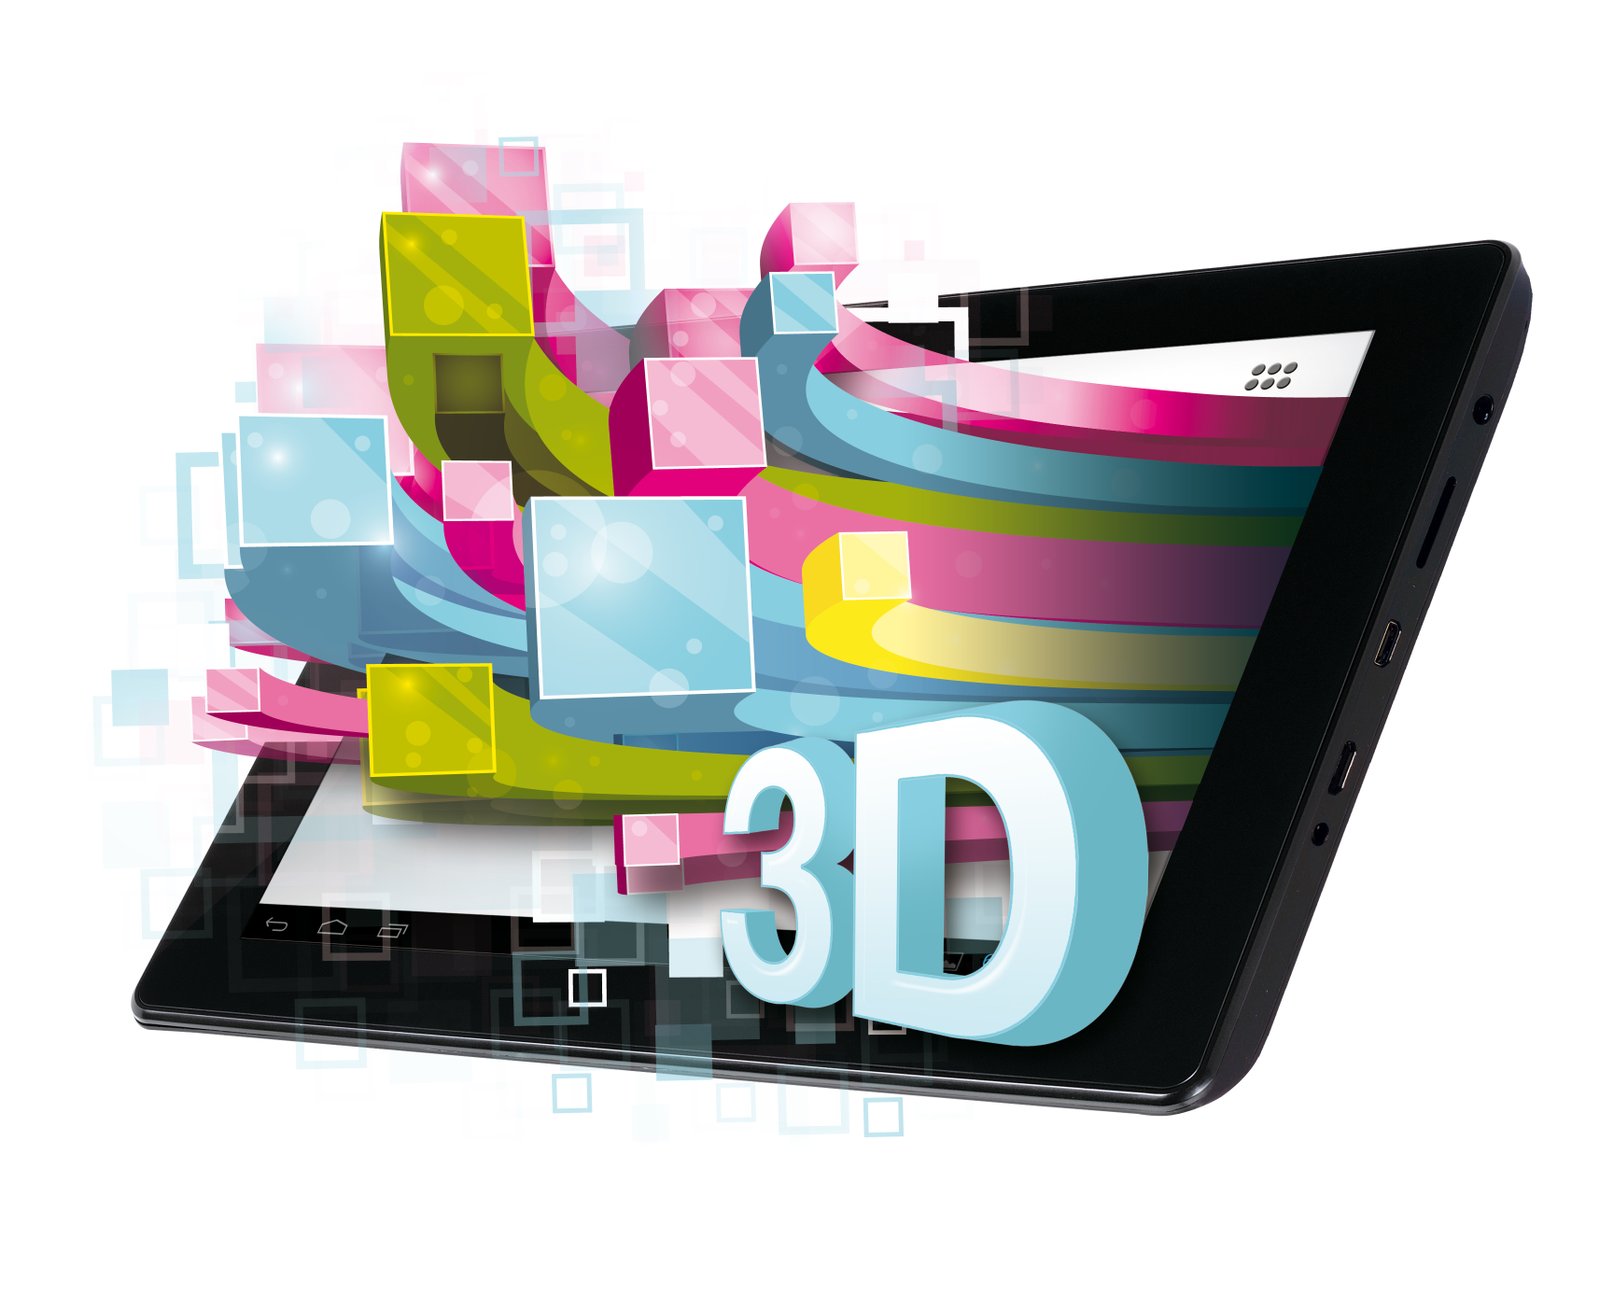 SlidePad 3D : Memup annonce une tablette tactile 3D sans lunettes !